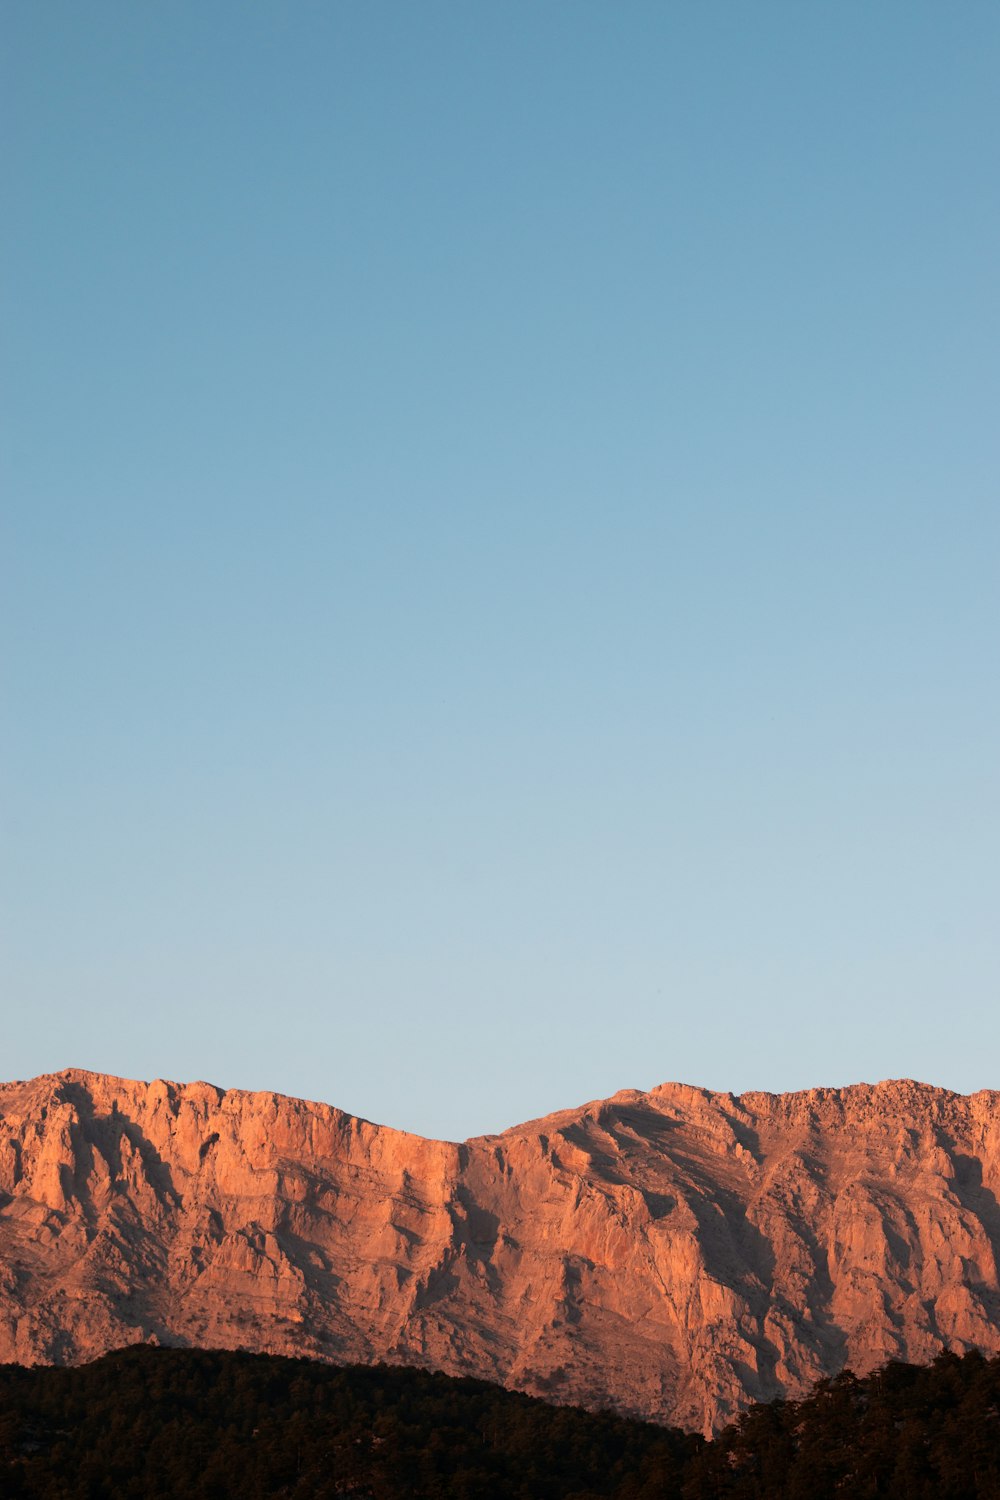 Montaña rocosa marrón bajo el cielo azul durante el día